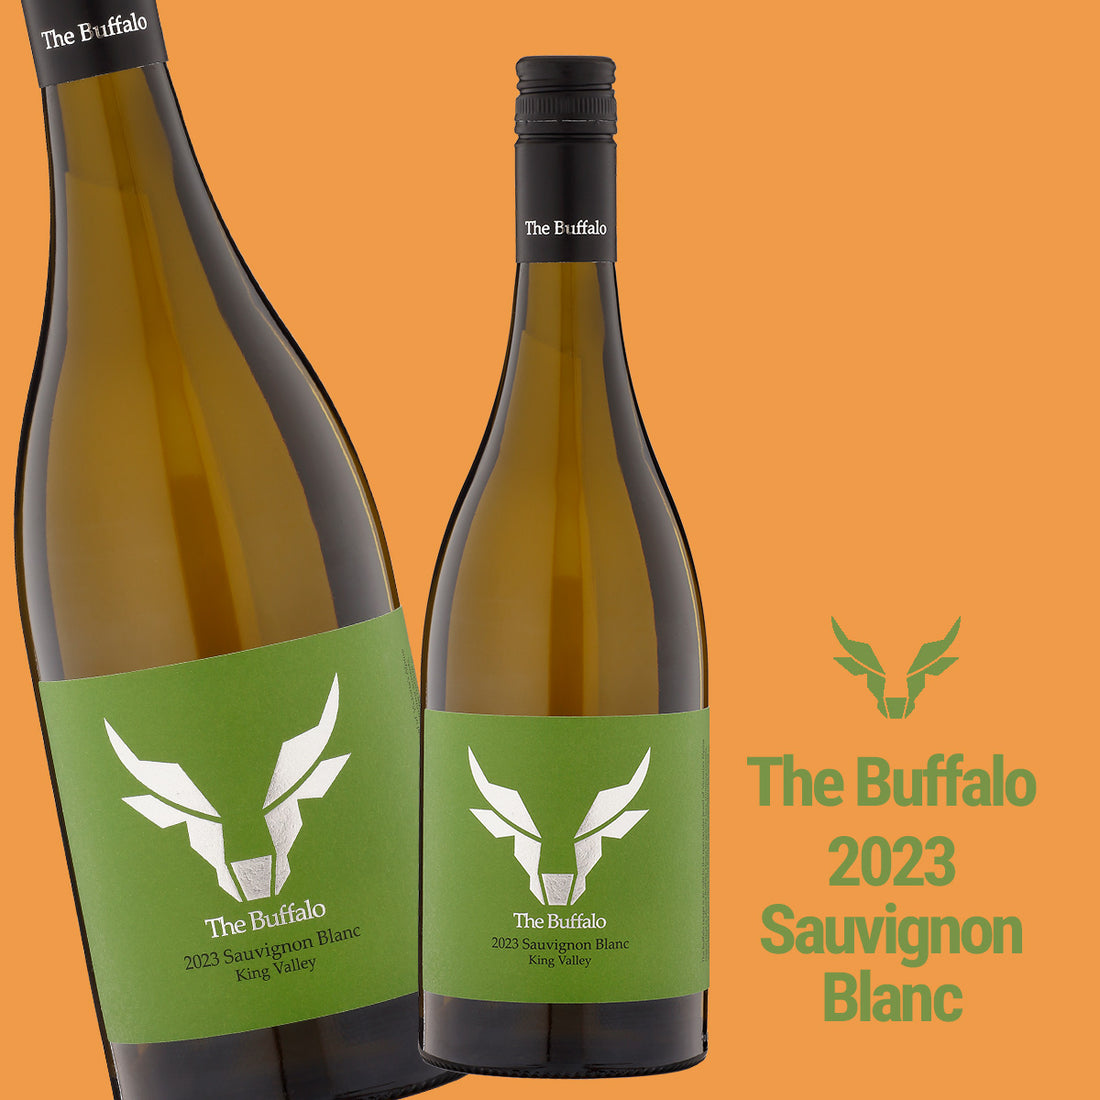 New Release - The Buffalo 2023 Sauvignon Blanc